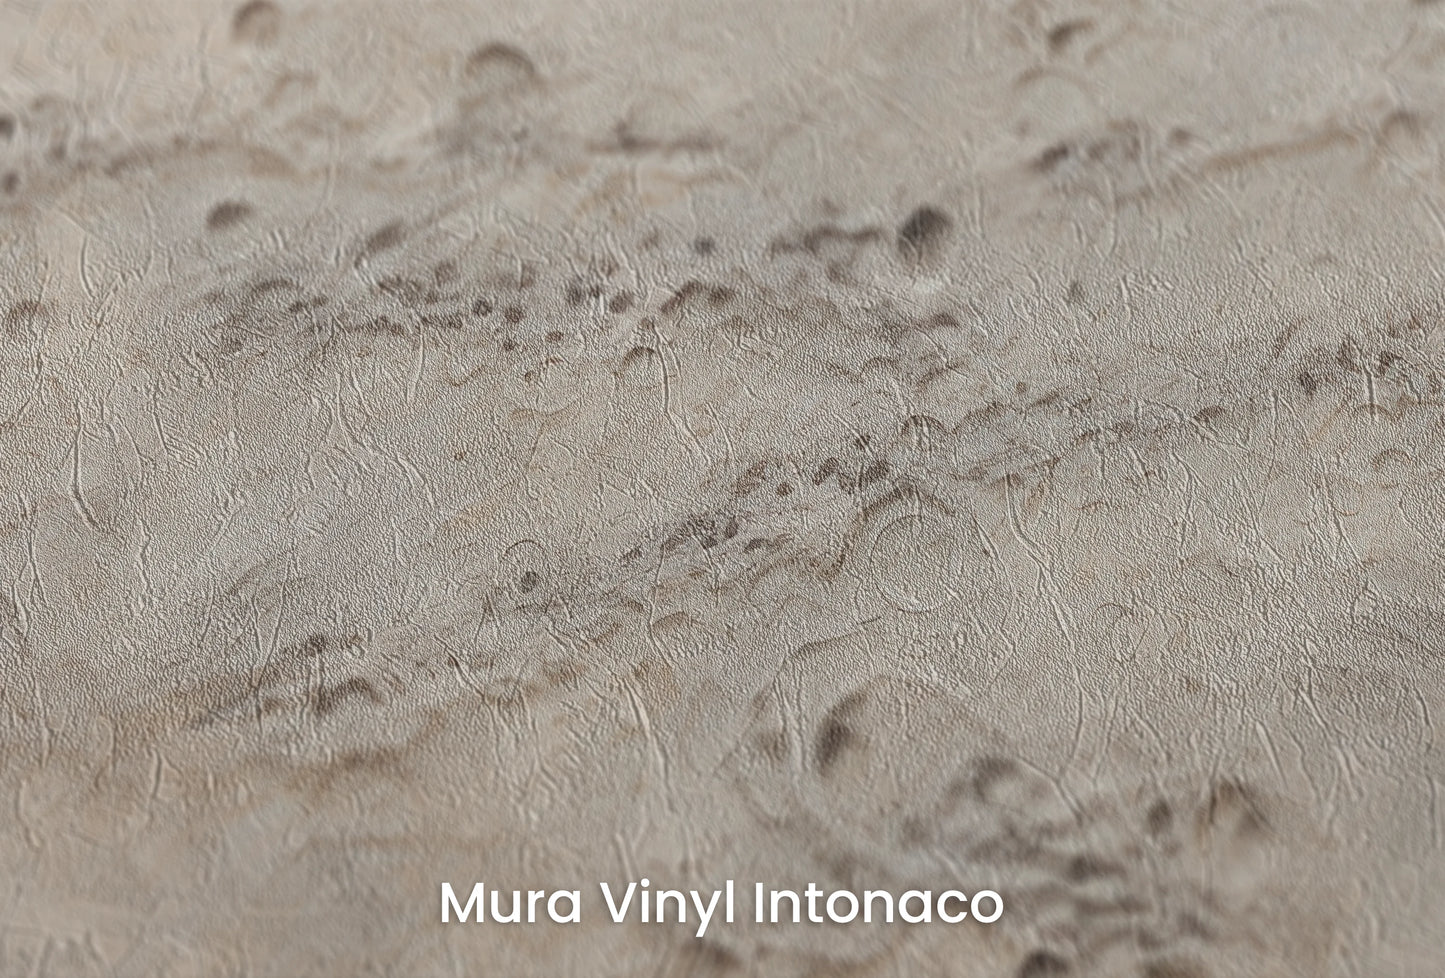 Zbliżenie na artystyczną fototapetę o nazwie Lunar Terrain na podłożu Mura Vinyl Intonaco - struktura tartego tynku.